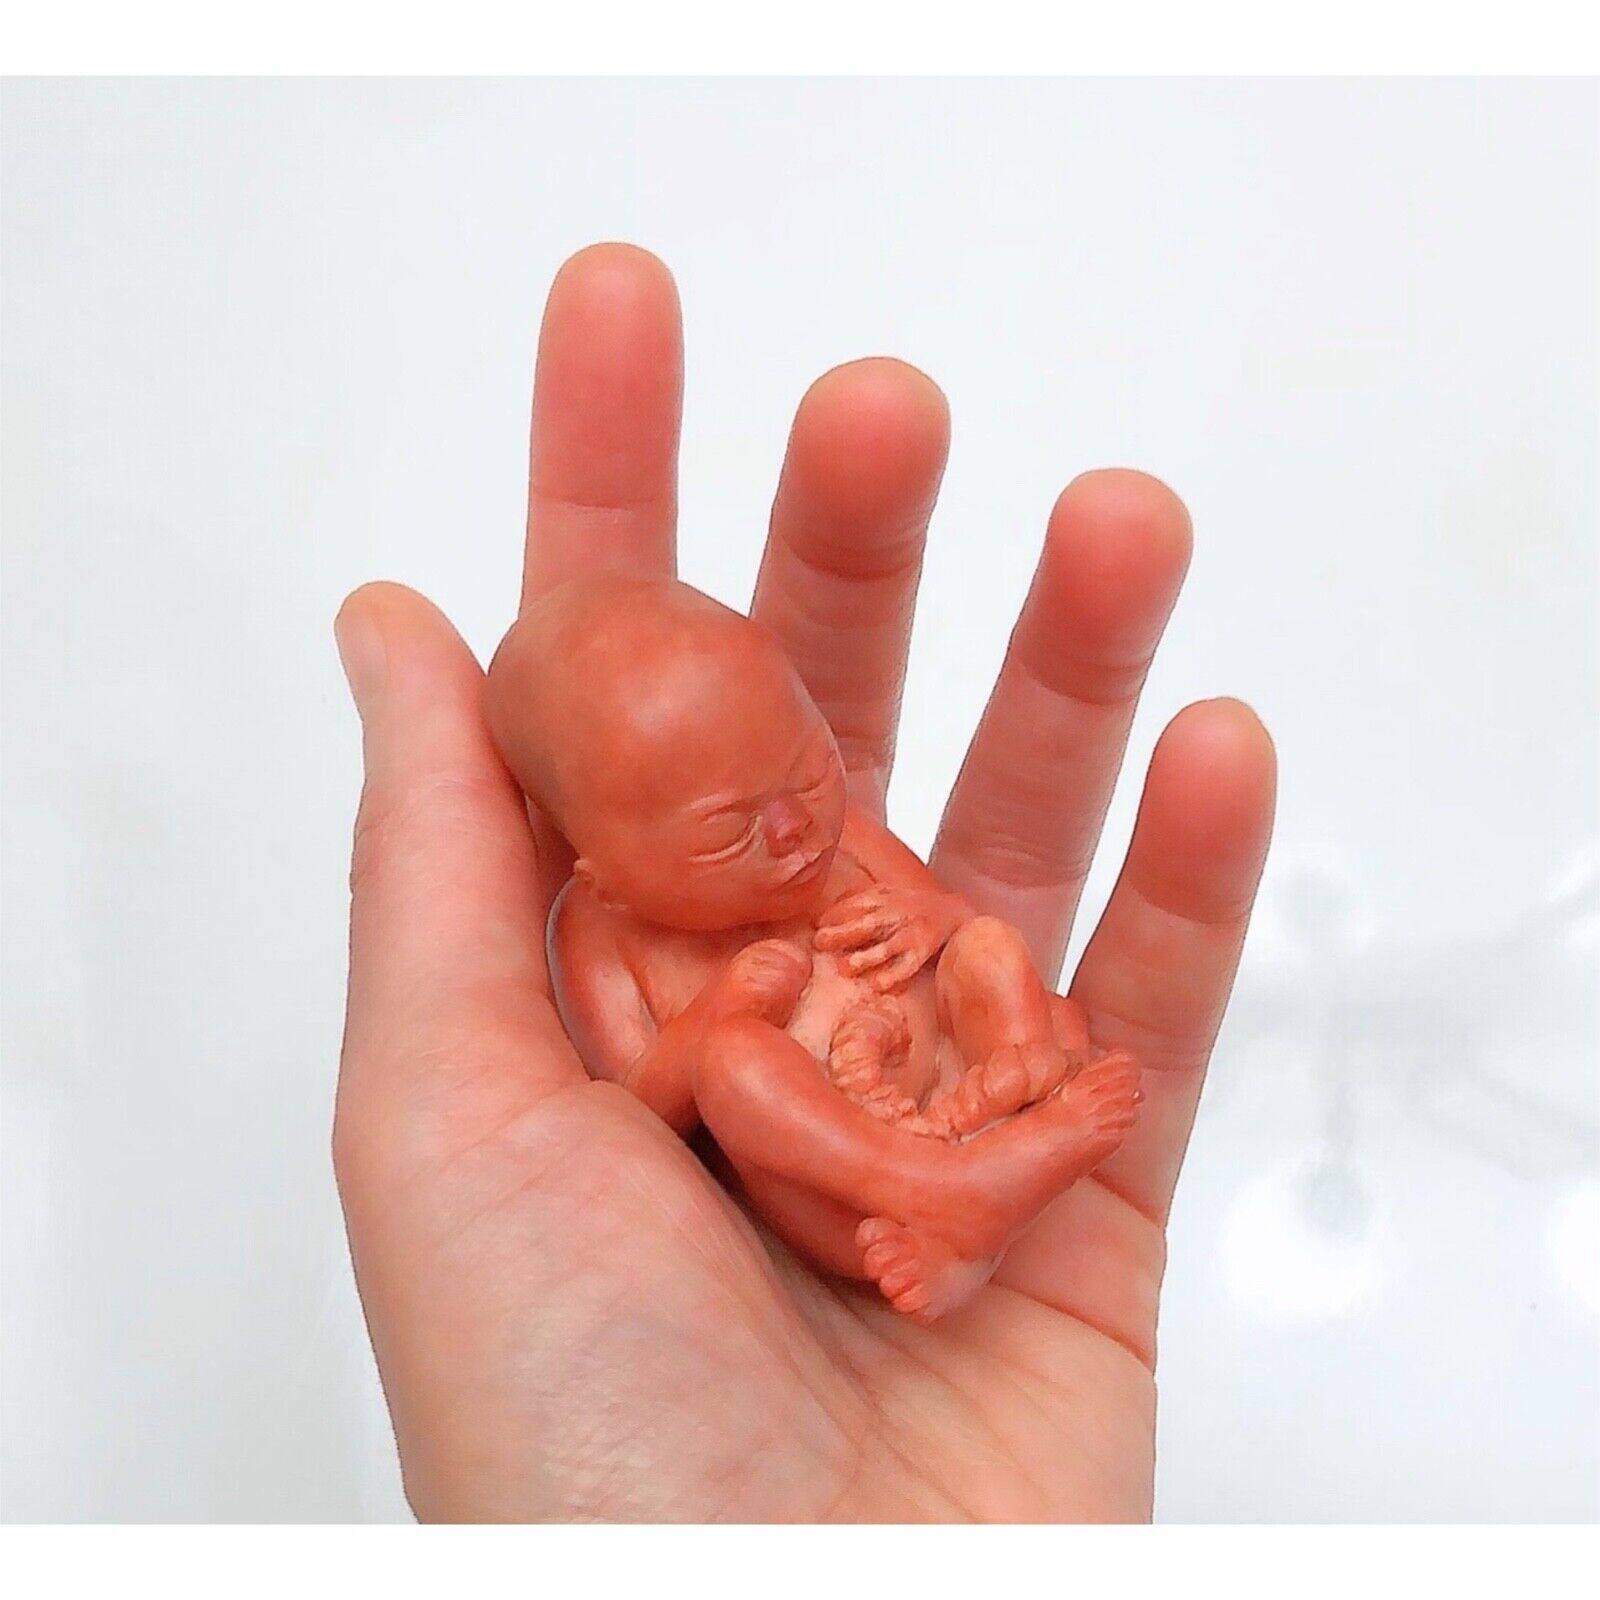 14 Weeks Baby Fetus, Stage of Fetal Development (Memorial/Miscarriage/Keepsake)